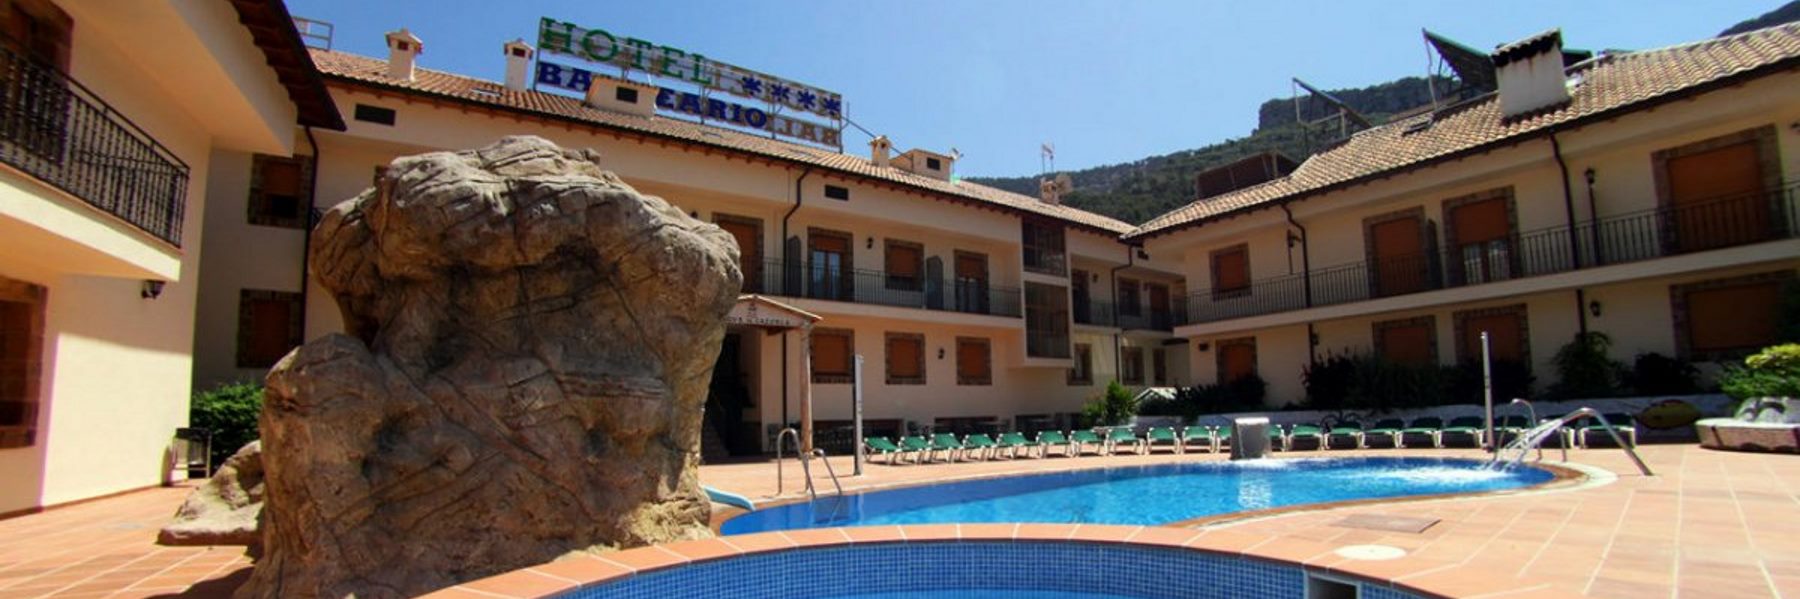 Una escapada barata rural. Hotel Spa Parque de Cazorla (Arroyo Frio - JAEN)